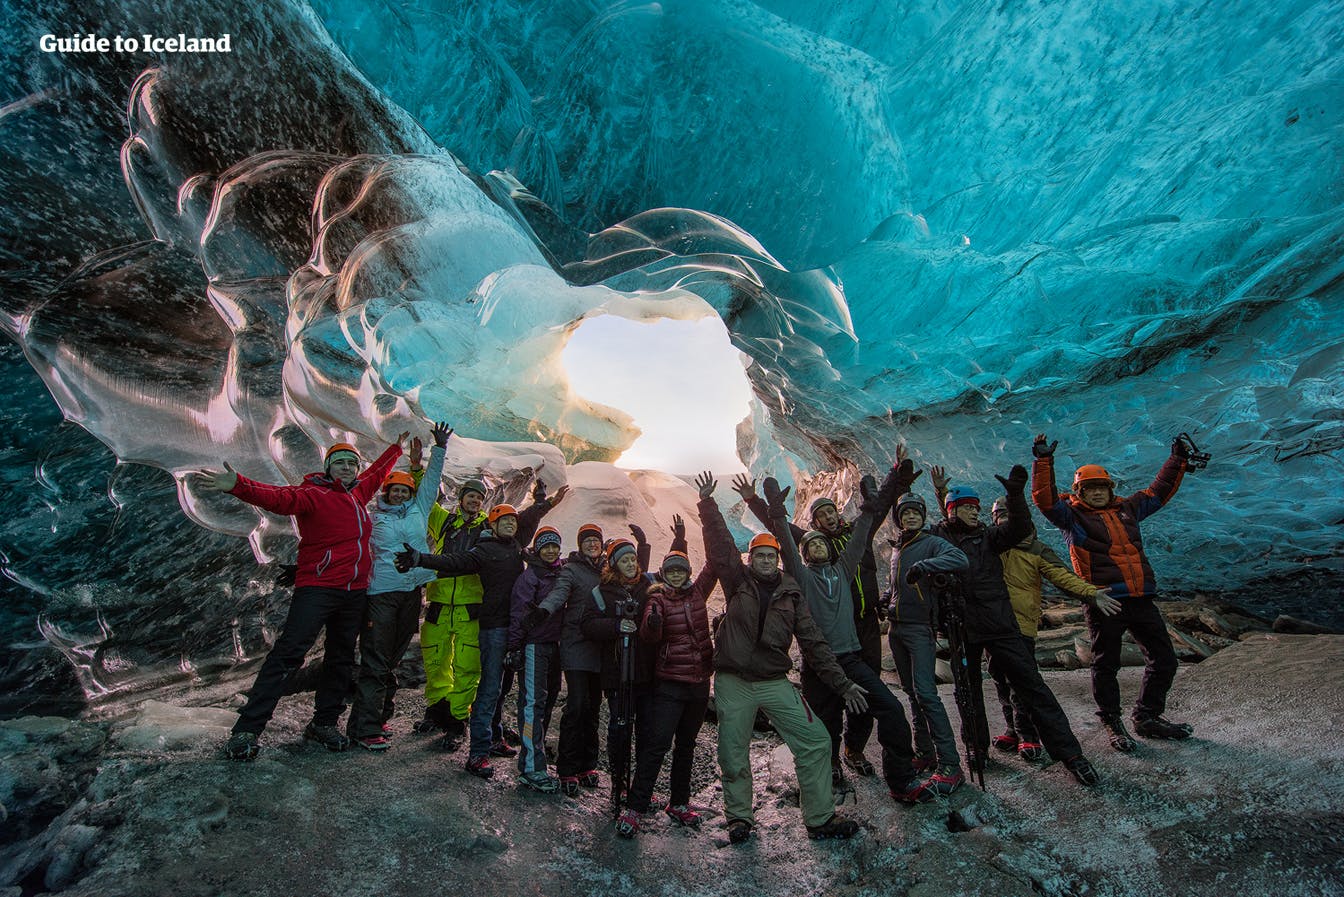 Mires donde mires en una cueva de hielo, te garantizamos que los asombros colores azules te dejarán boquiabierto.